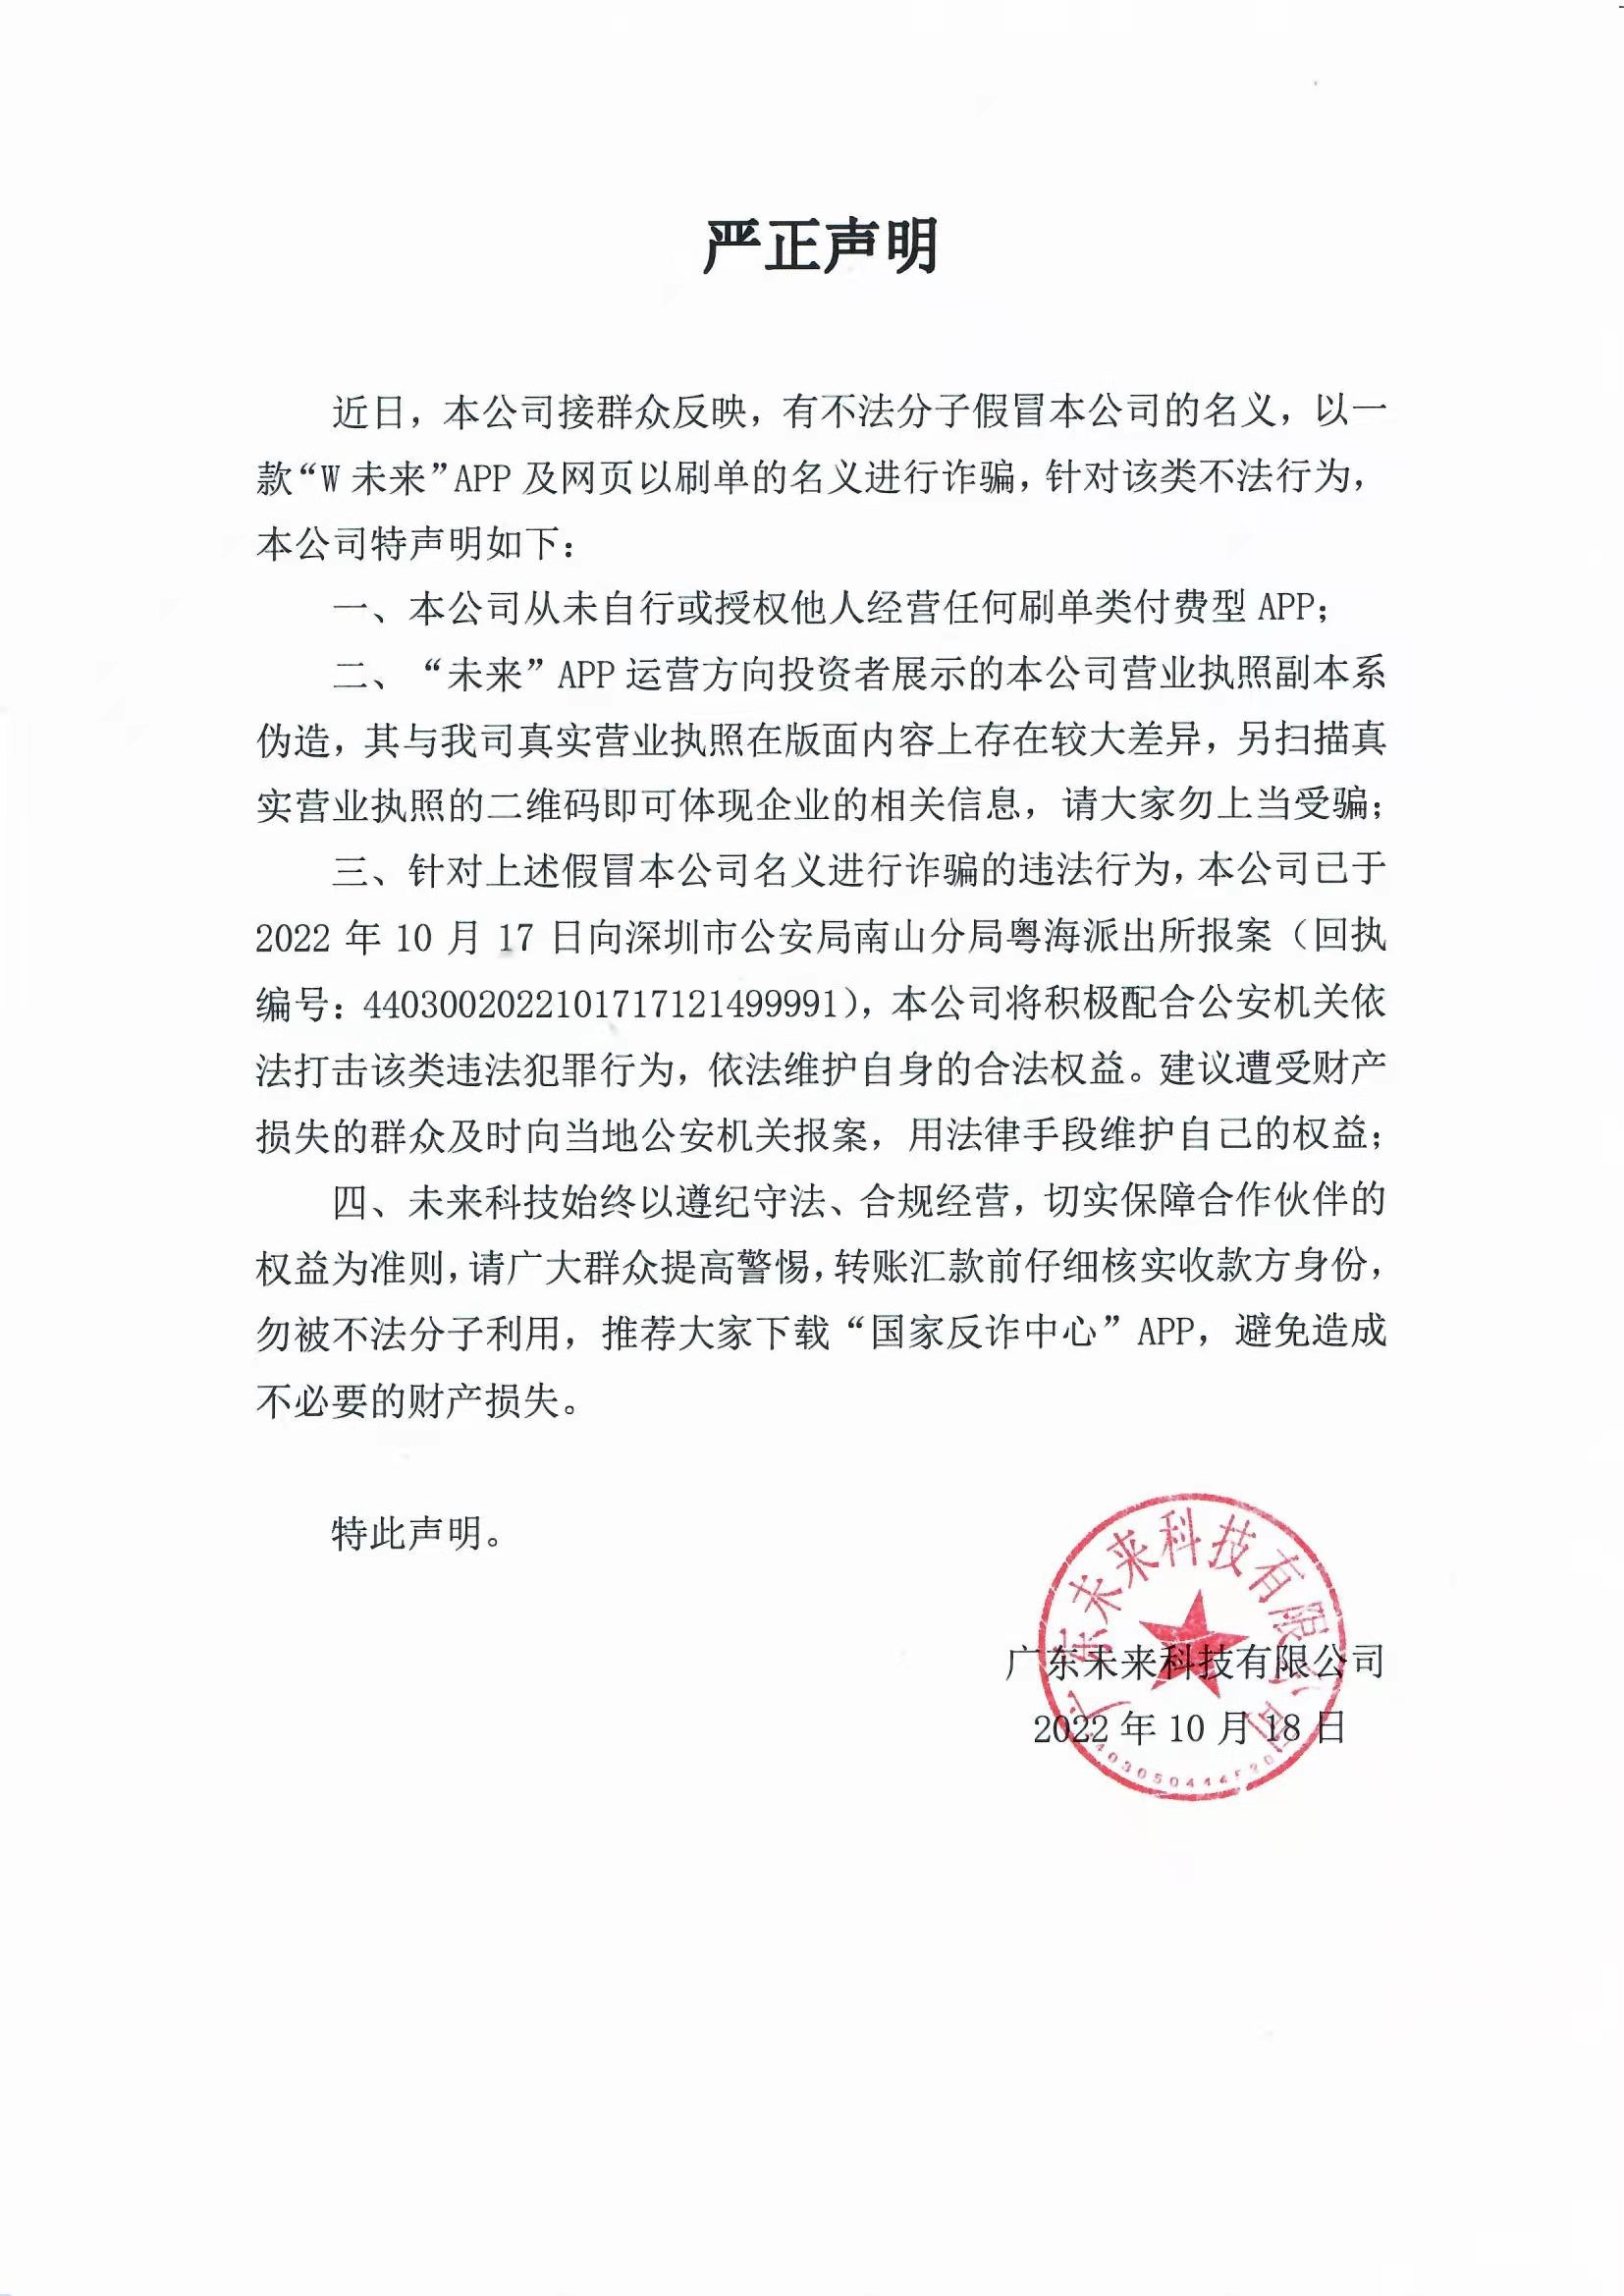 博鱼电子竞技(中国)有限公司官网有限公司严正声明